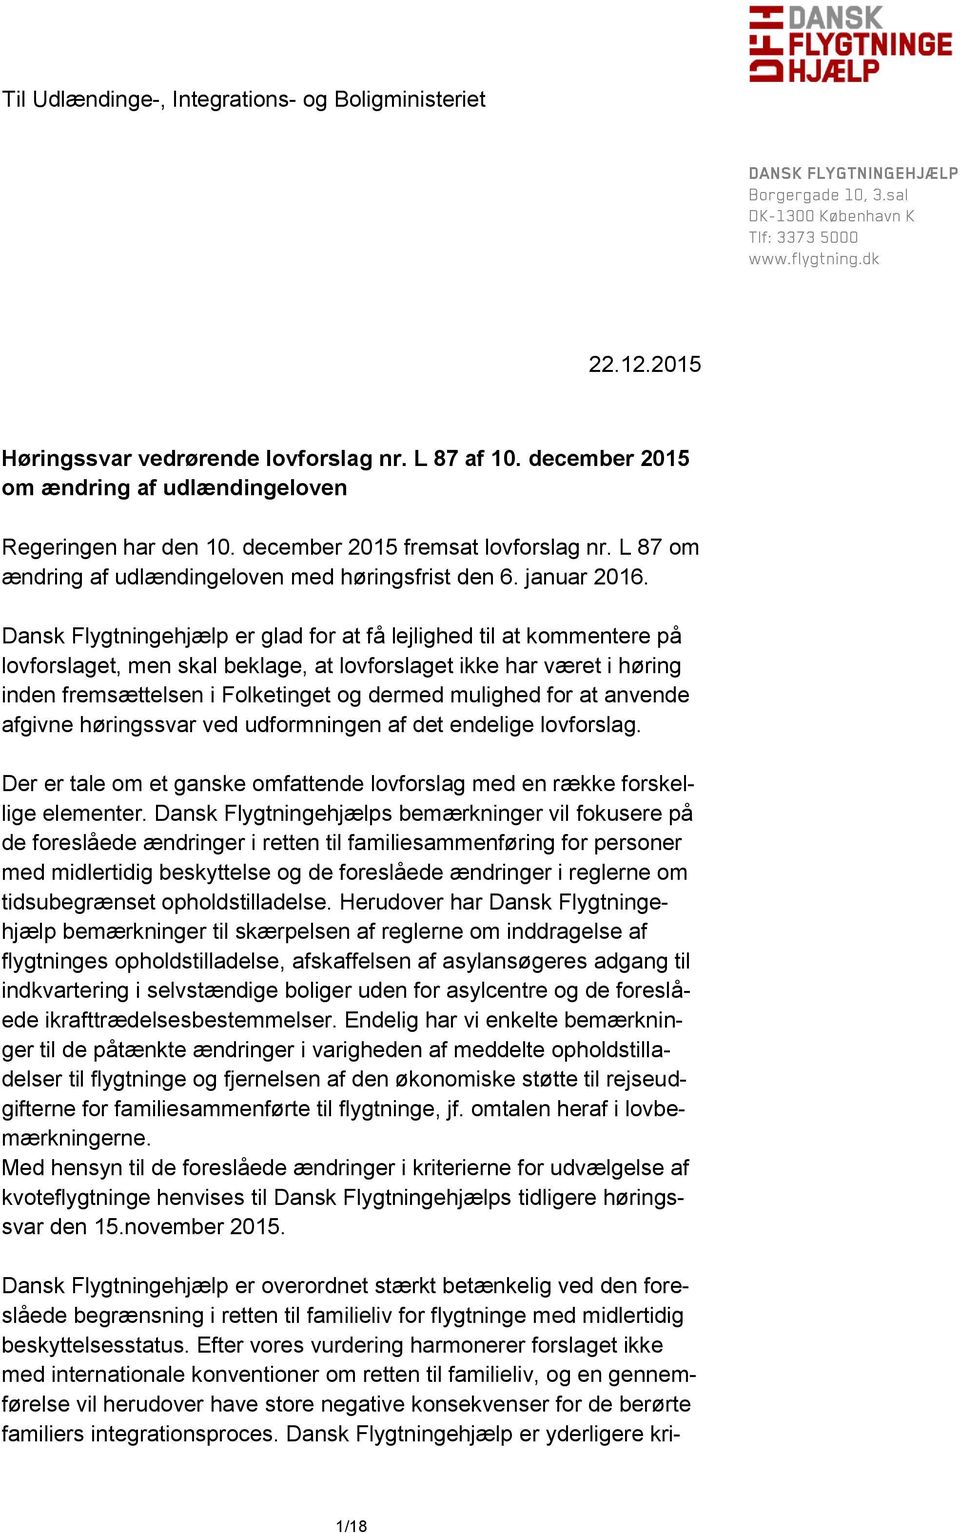 Dansk Flygtningehjælp er glad for at få lejlighed til at kommentere på lovforslaget, men skal beklage, at lovforslaget ikke har været i høring inden fremsættelsen i Folketinget og dermed mulighed for